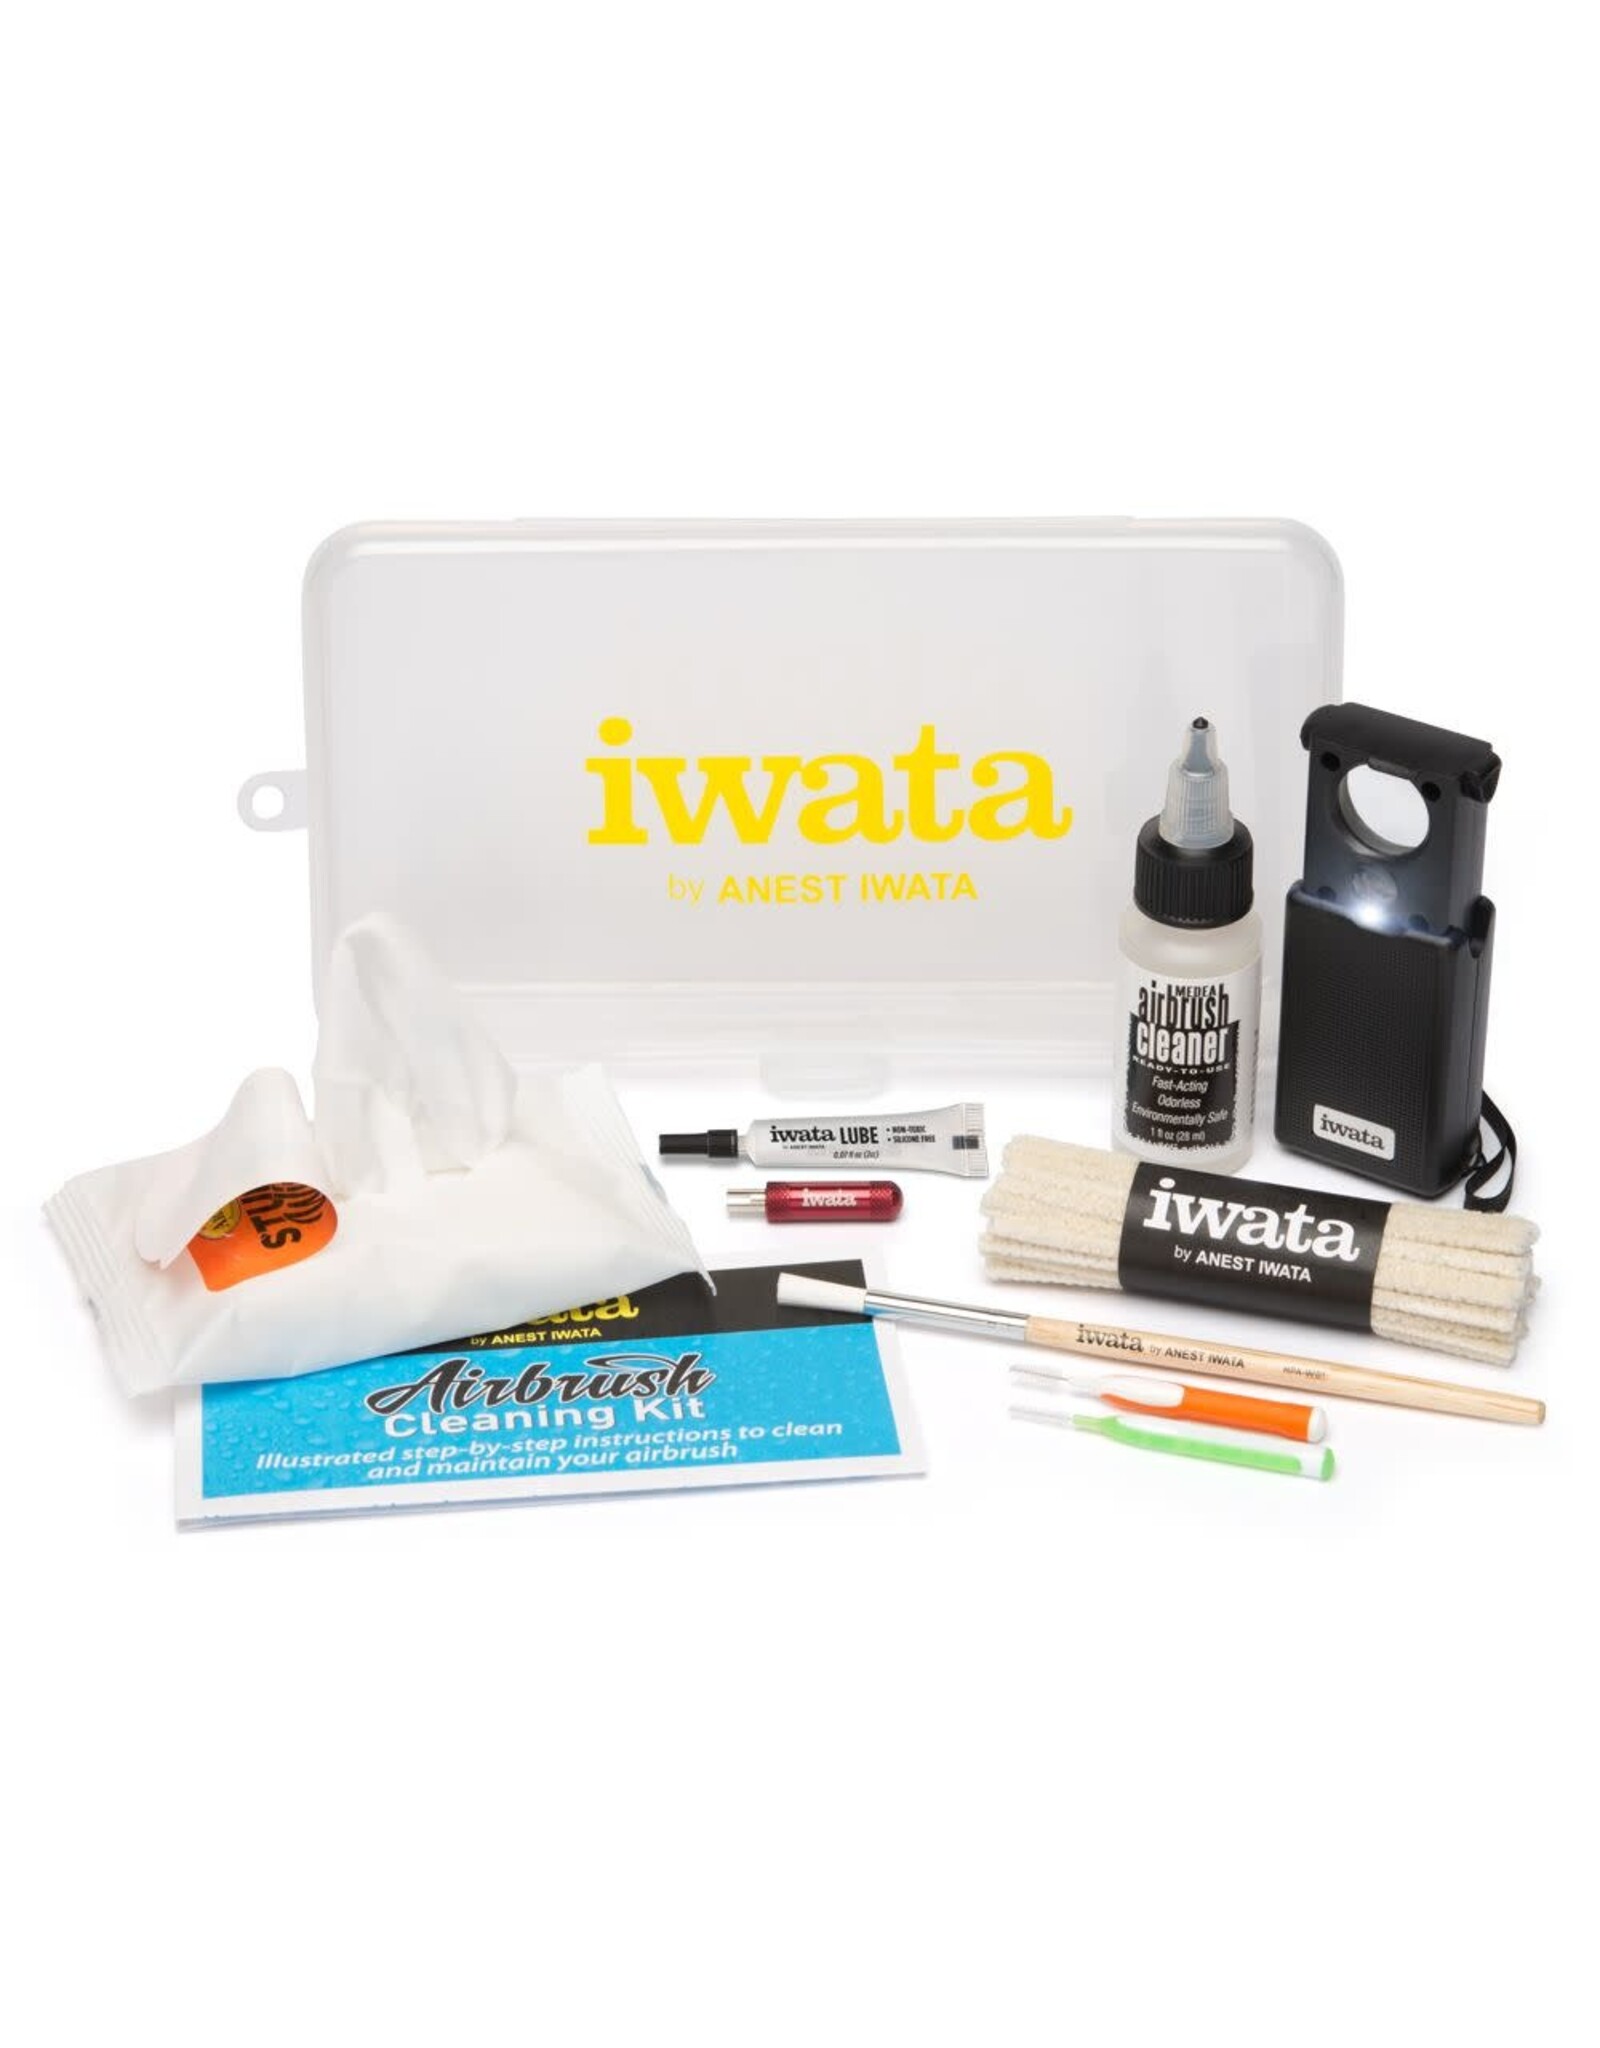 Iwata Airbrush Cleaning Kit